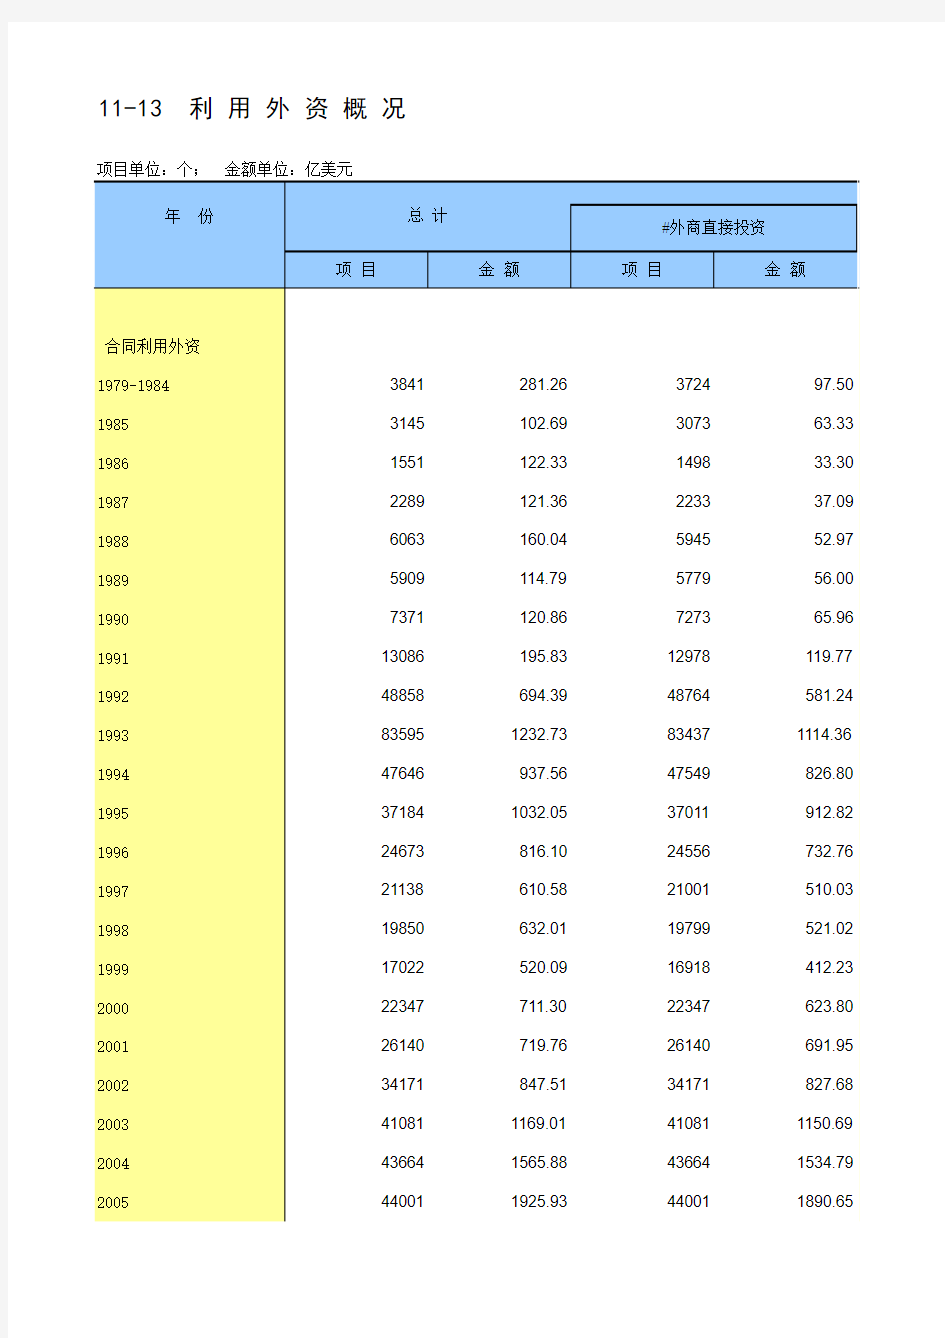 中国统计年鉴2014利用外资概况